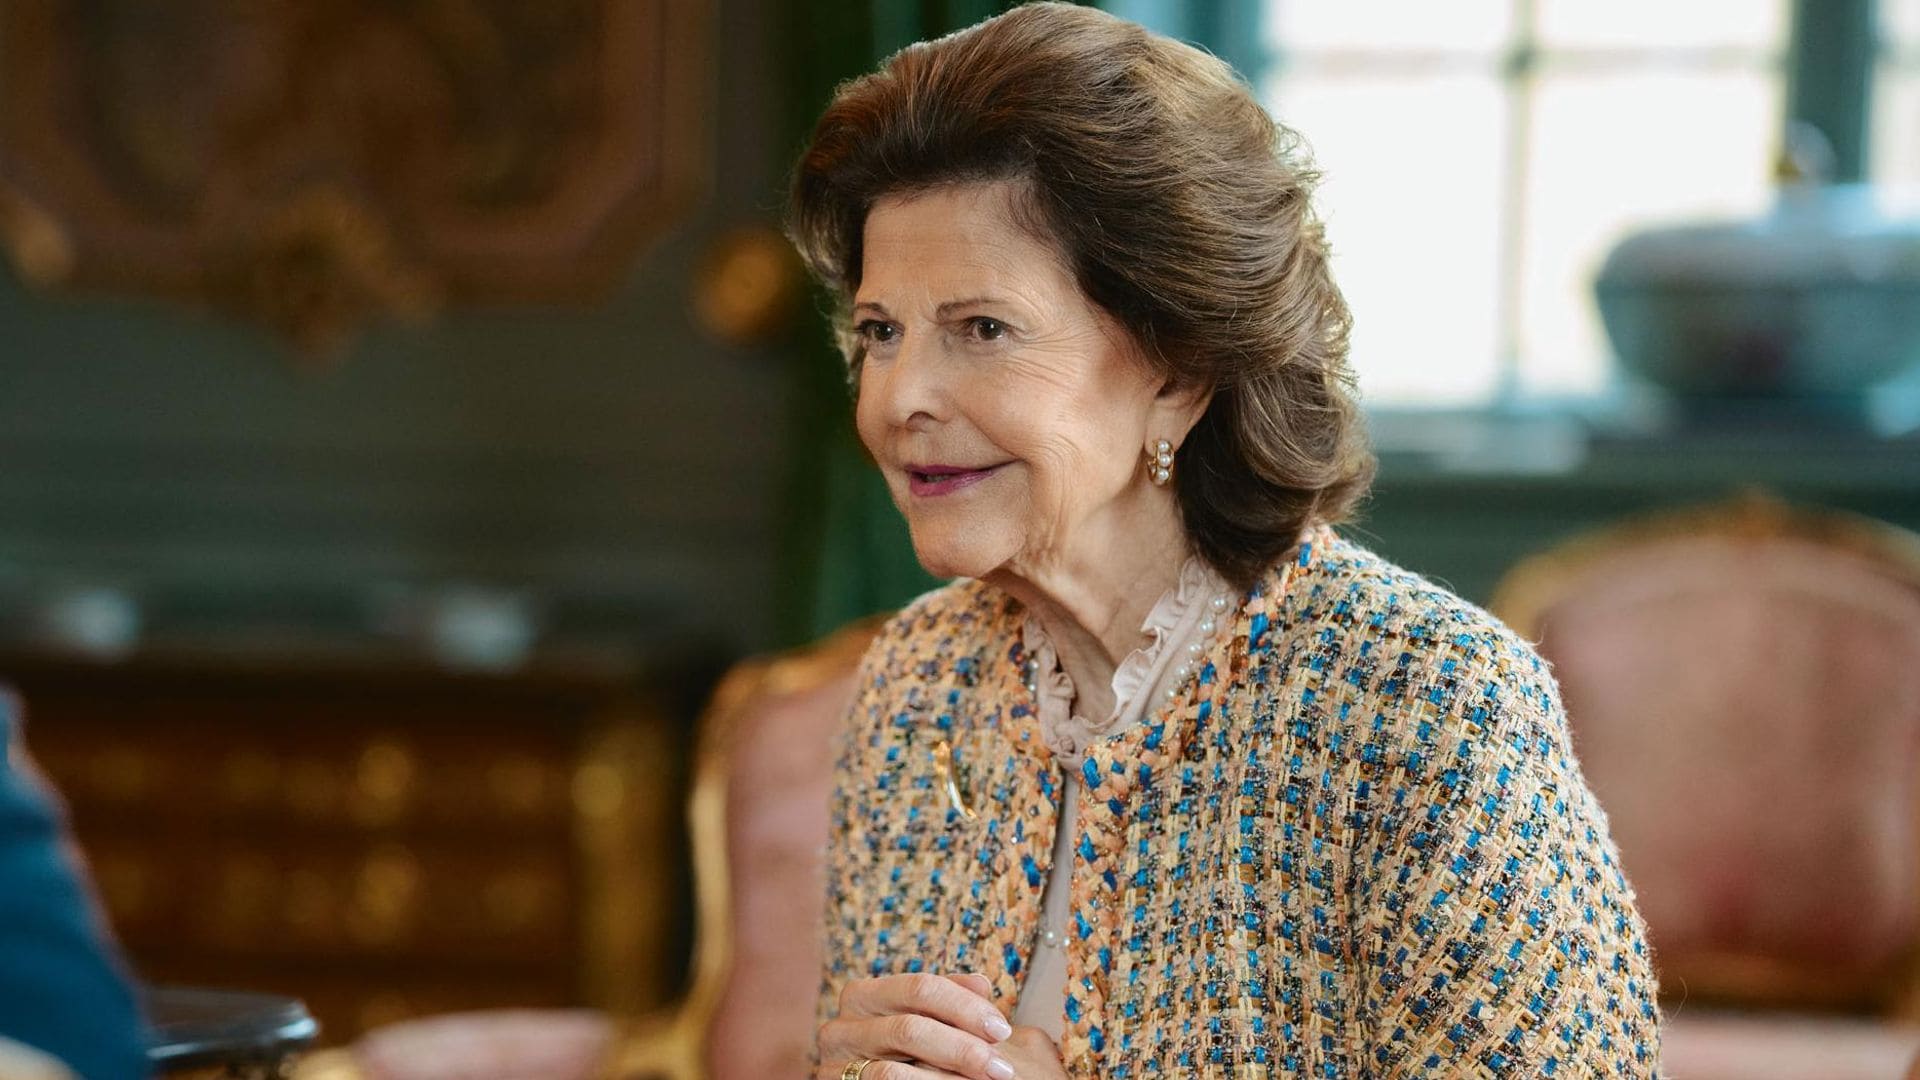 En ¡HOLA!: La reina Silvia de Suecia en su entrevista más profunda, personal y humana al cumplir 80 años: ‘No existe un manual para ser reina’